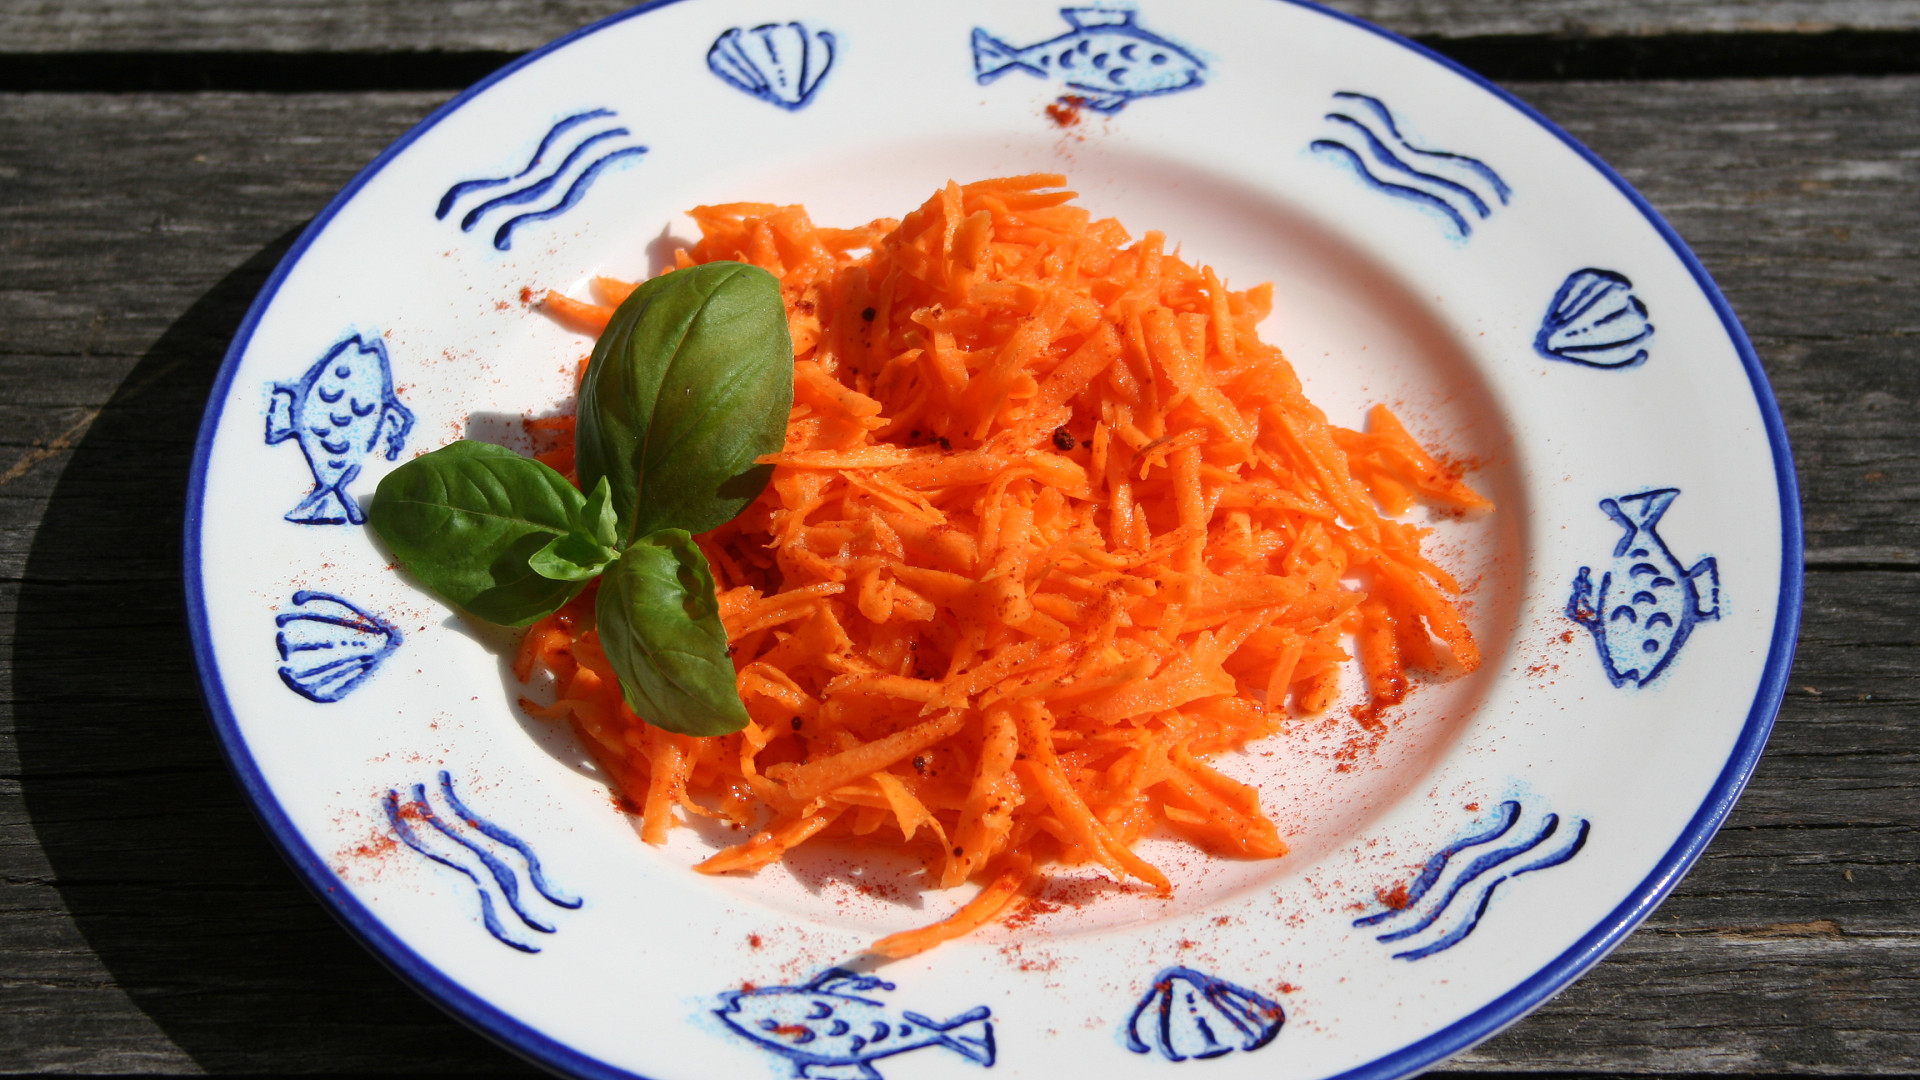 Nezvyklý mrkvový salát - chuti se nebojte :-)